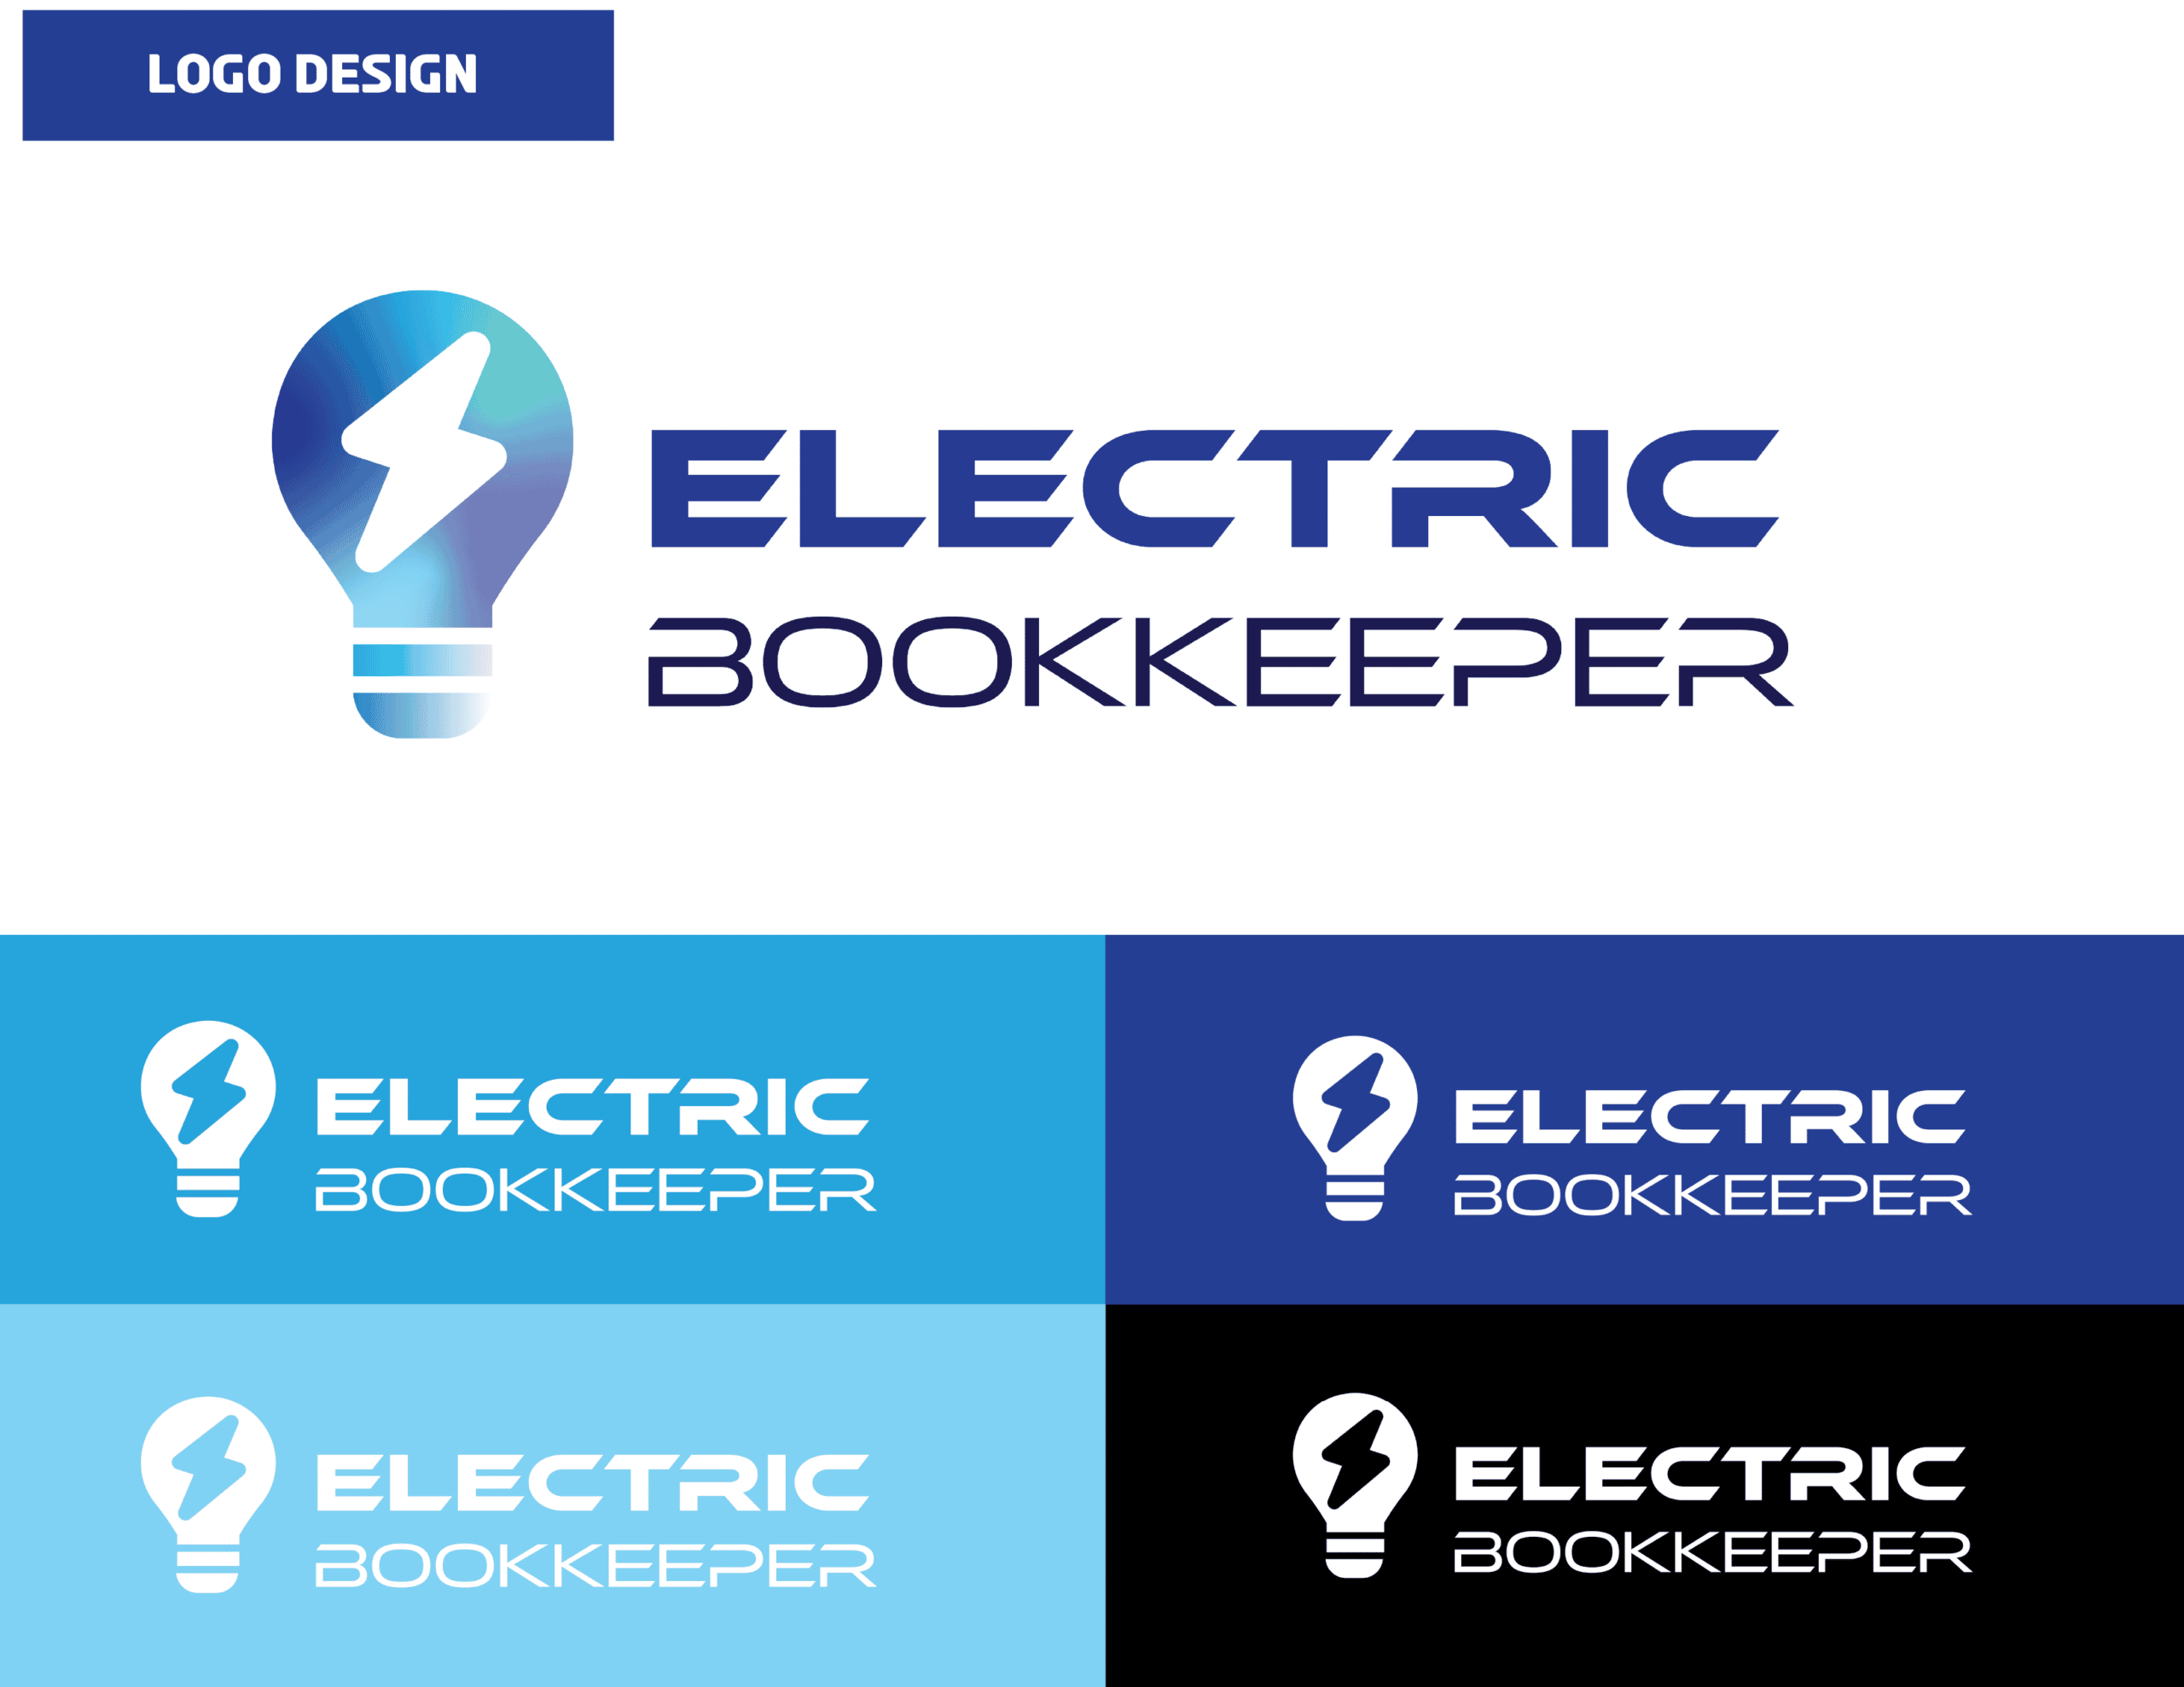 01_ElectricBookkeeper_Logo Design